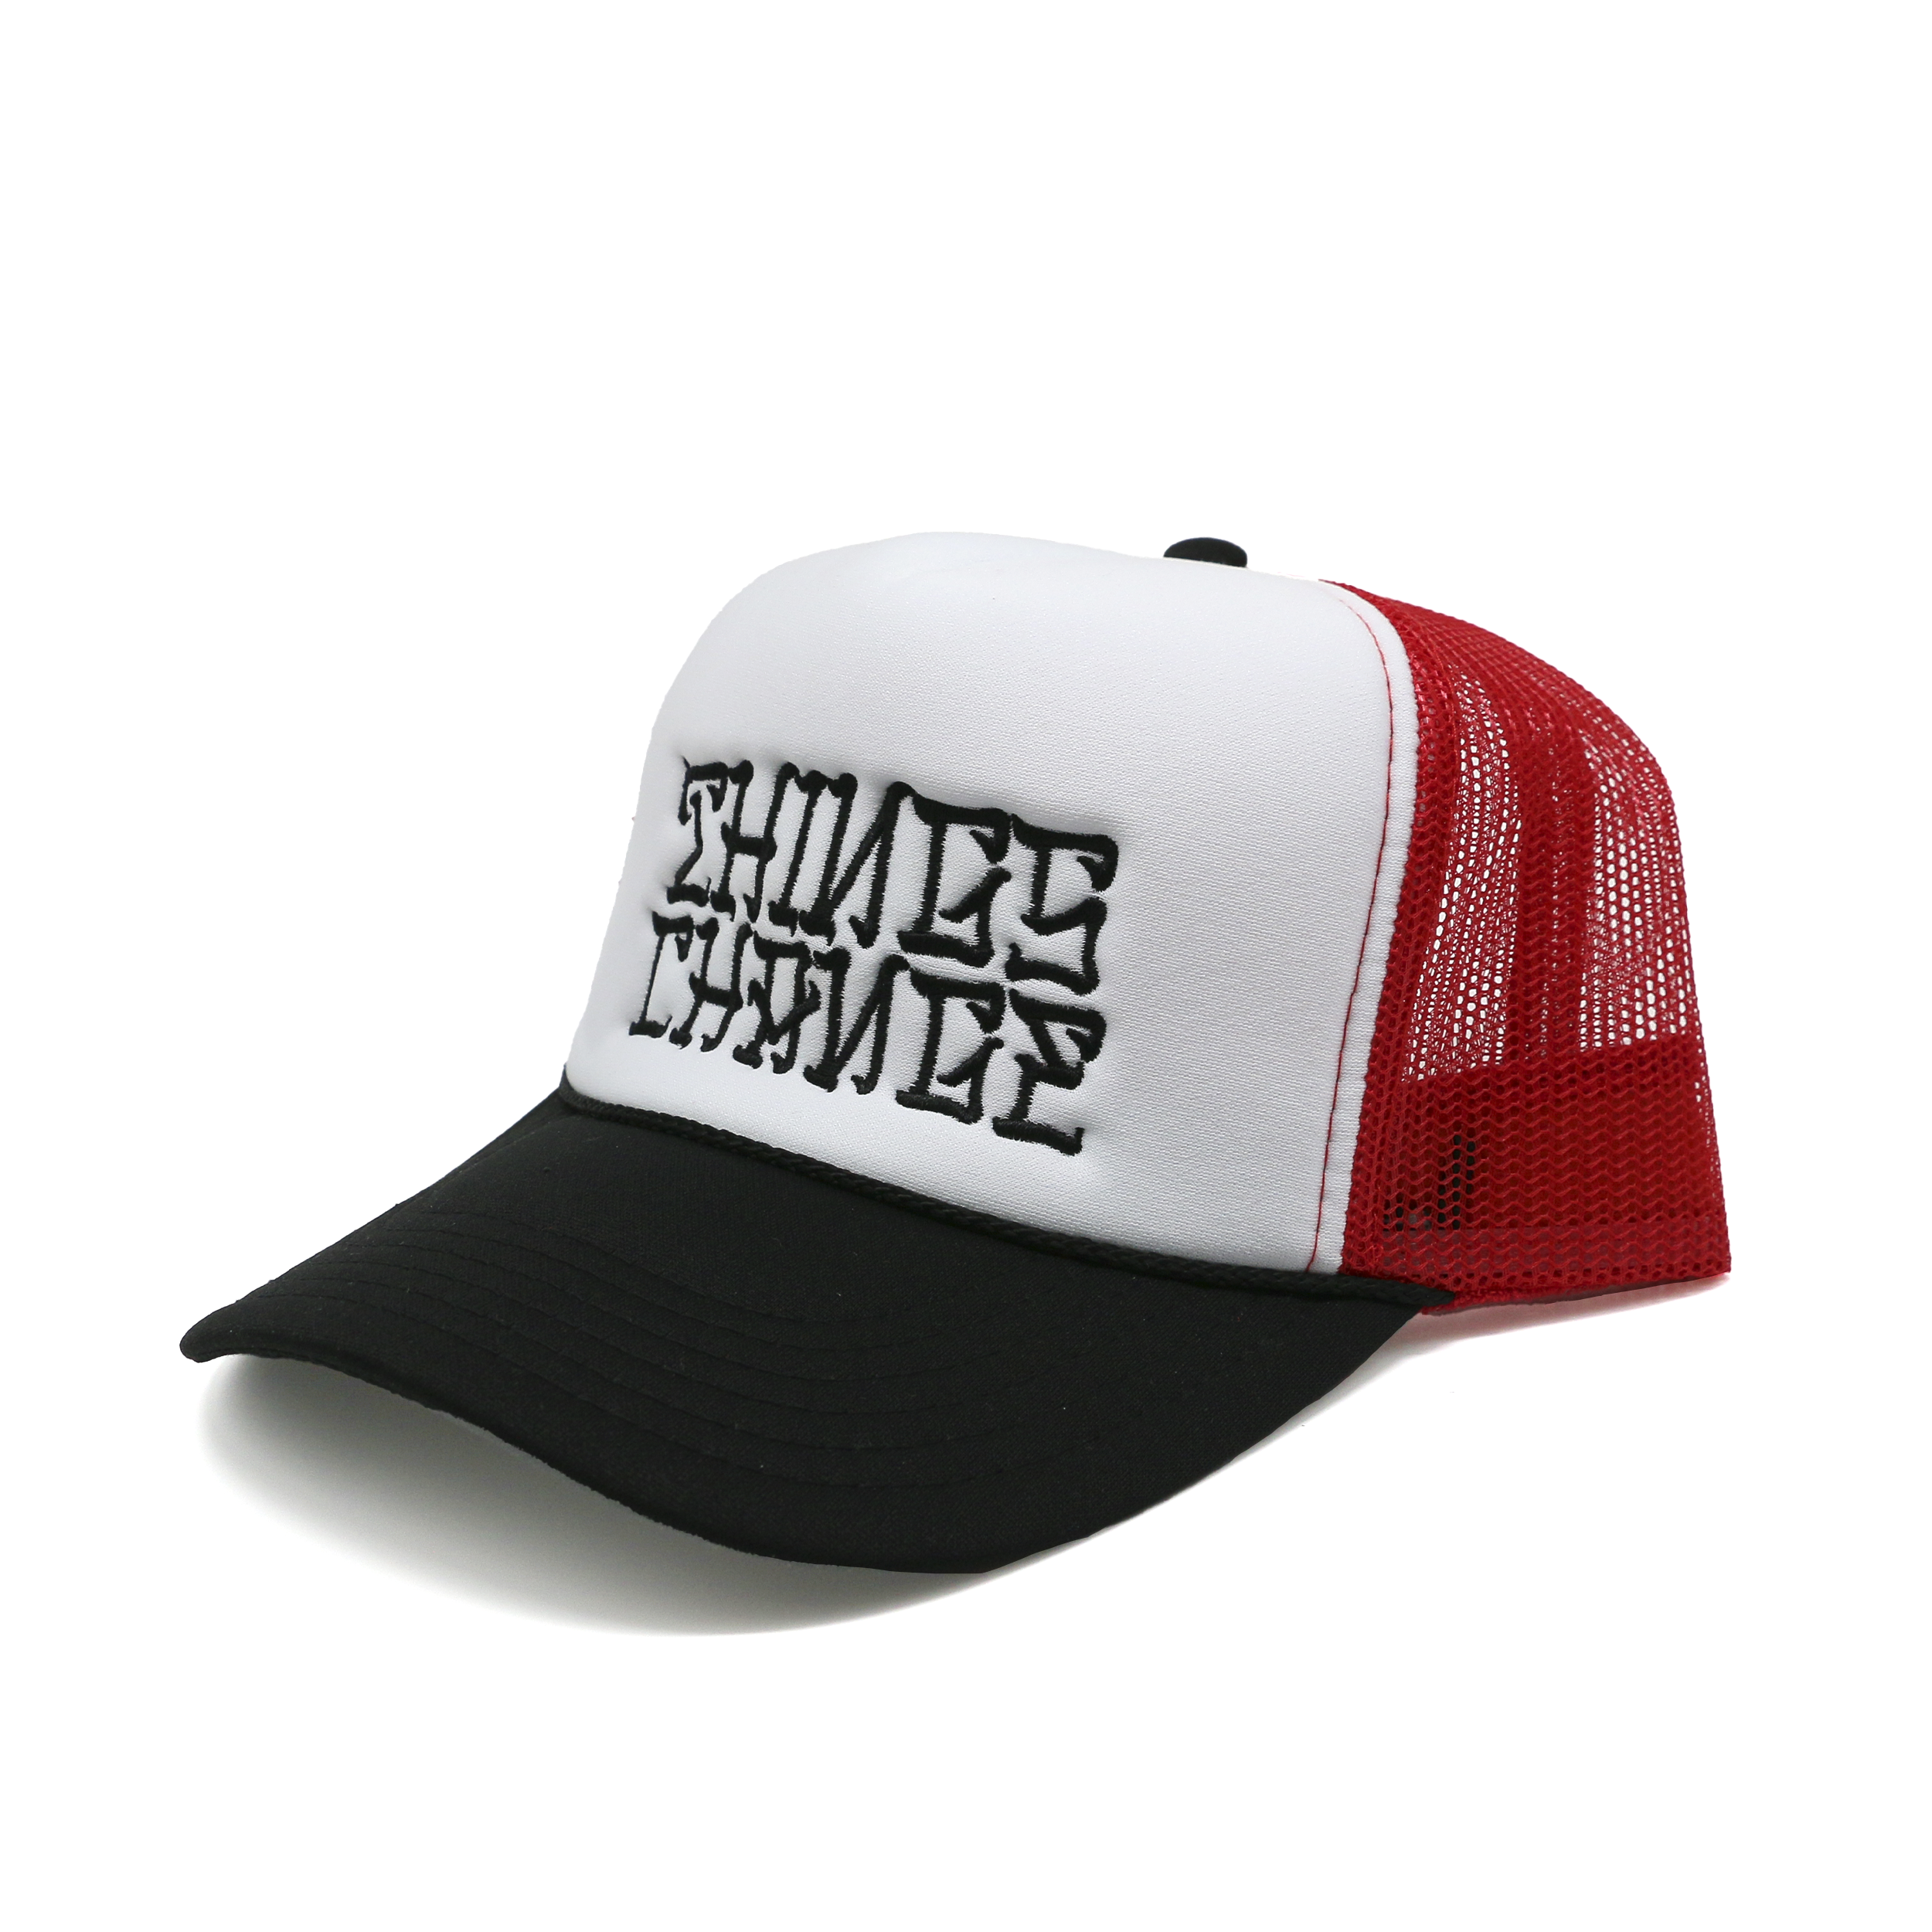 DKS "Things Change" Trucker Hat (Black/White/Red)